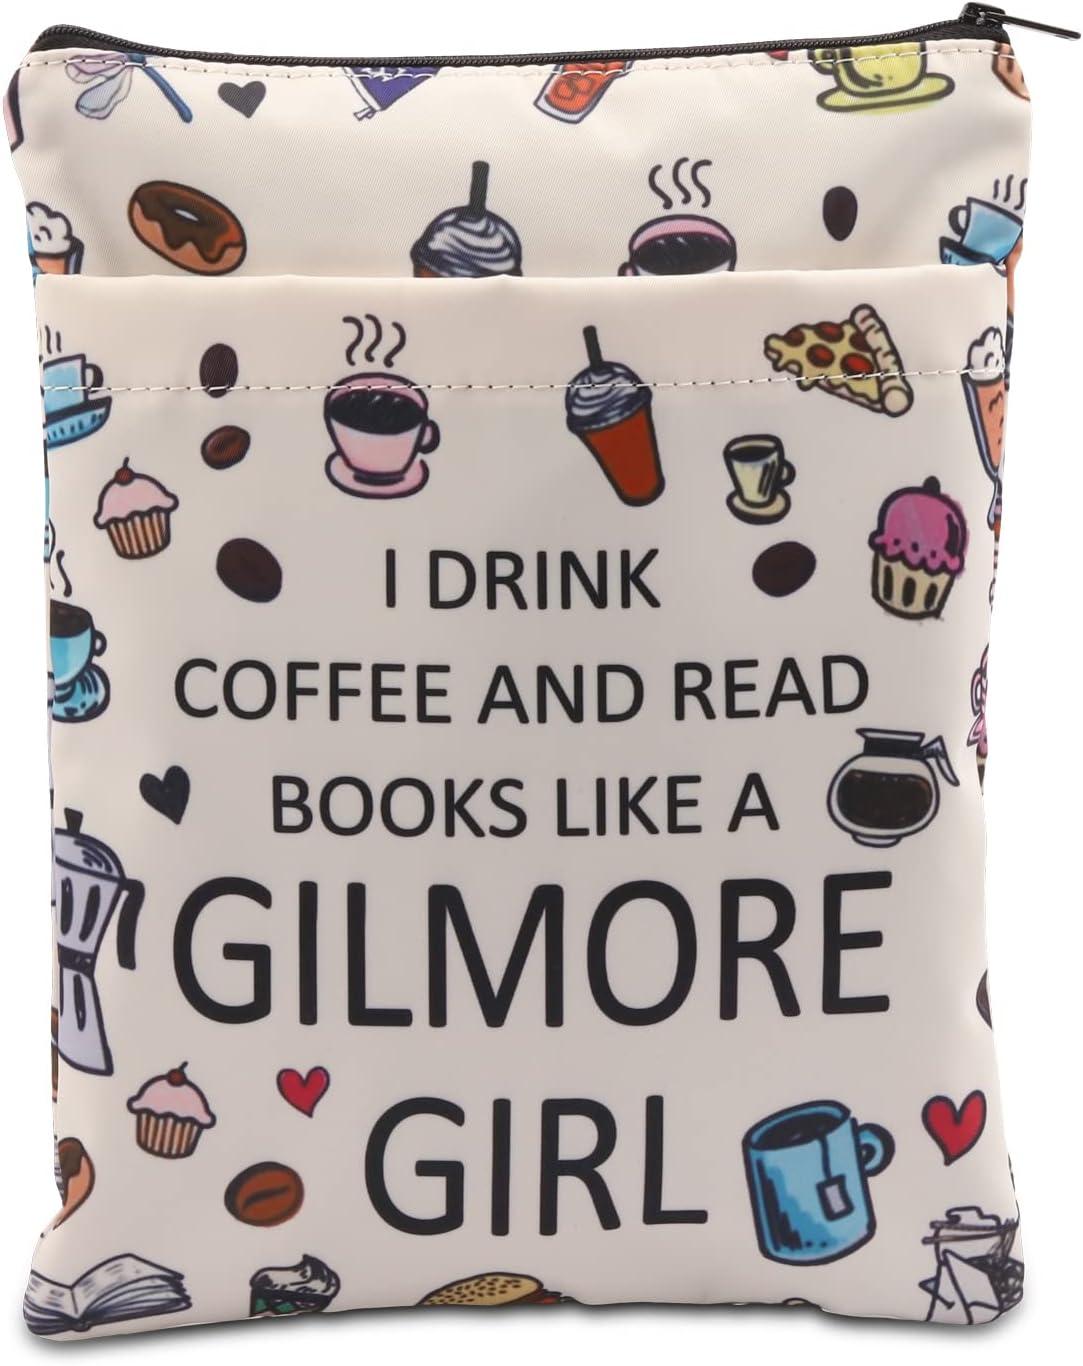 コーヒーとペストリーが入った白い本の表紙には、「ギルモア ガールのようにコーヒーを飲み、本を読みます」と書かれています。